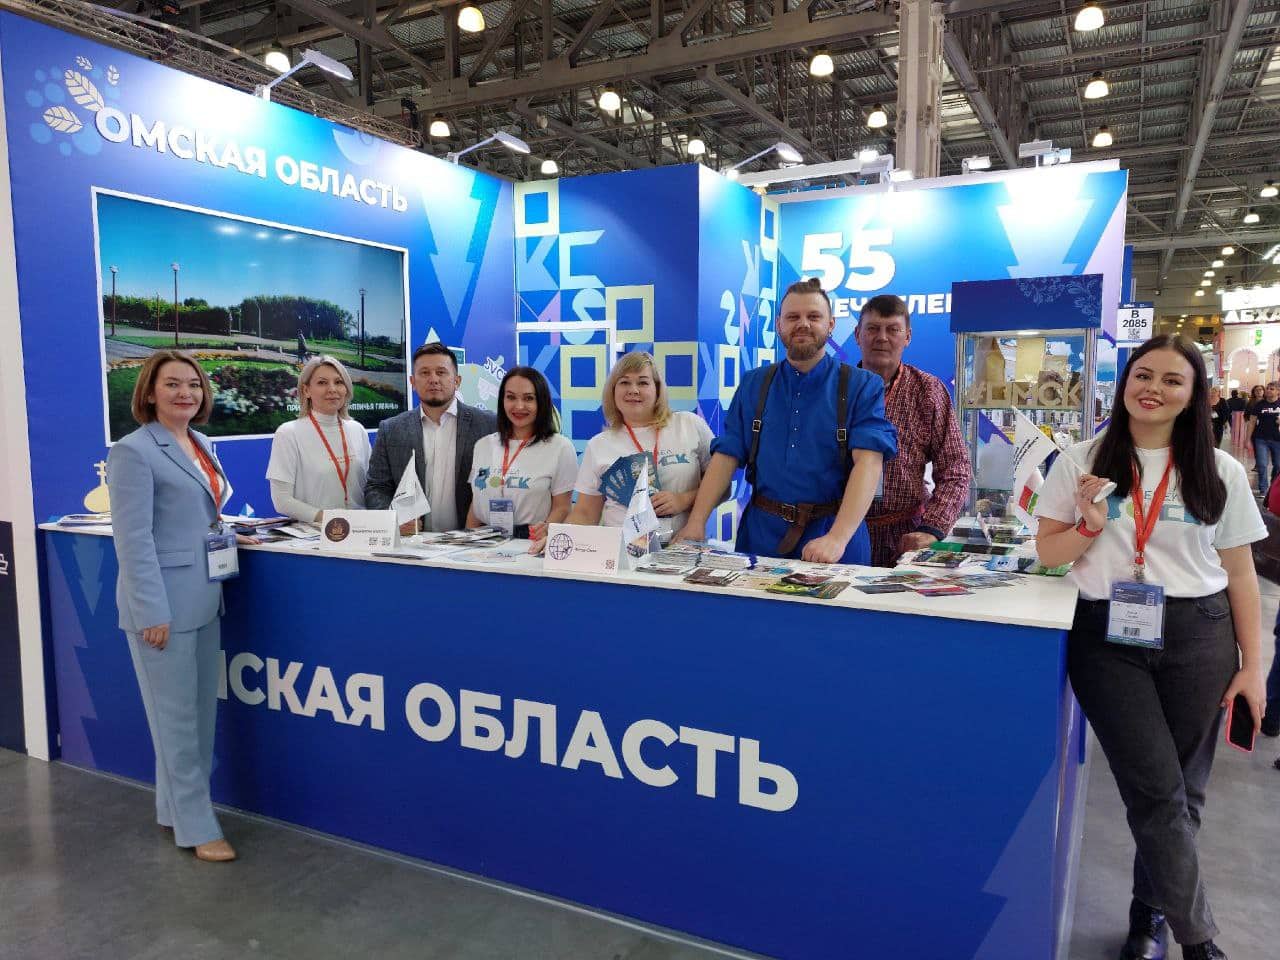 Омская область произвела впечатление на Международной выставке туризма «MITT» в Москве